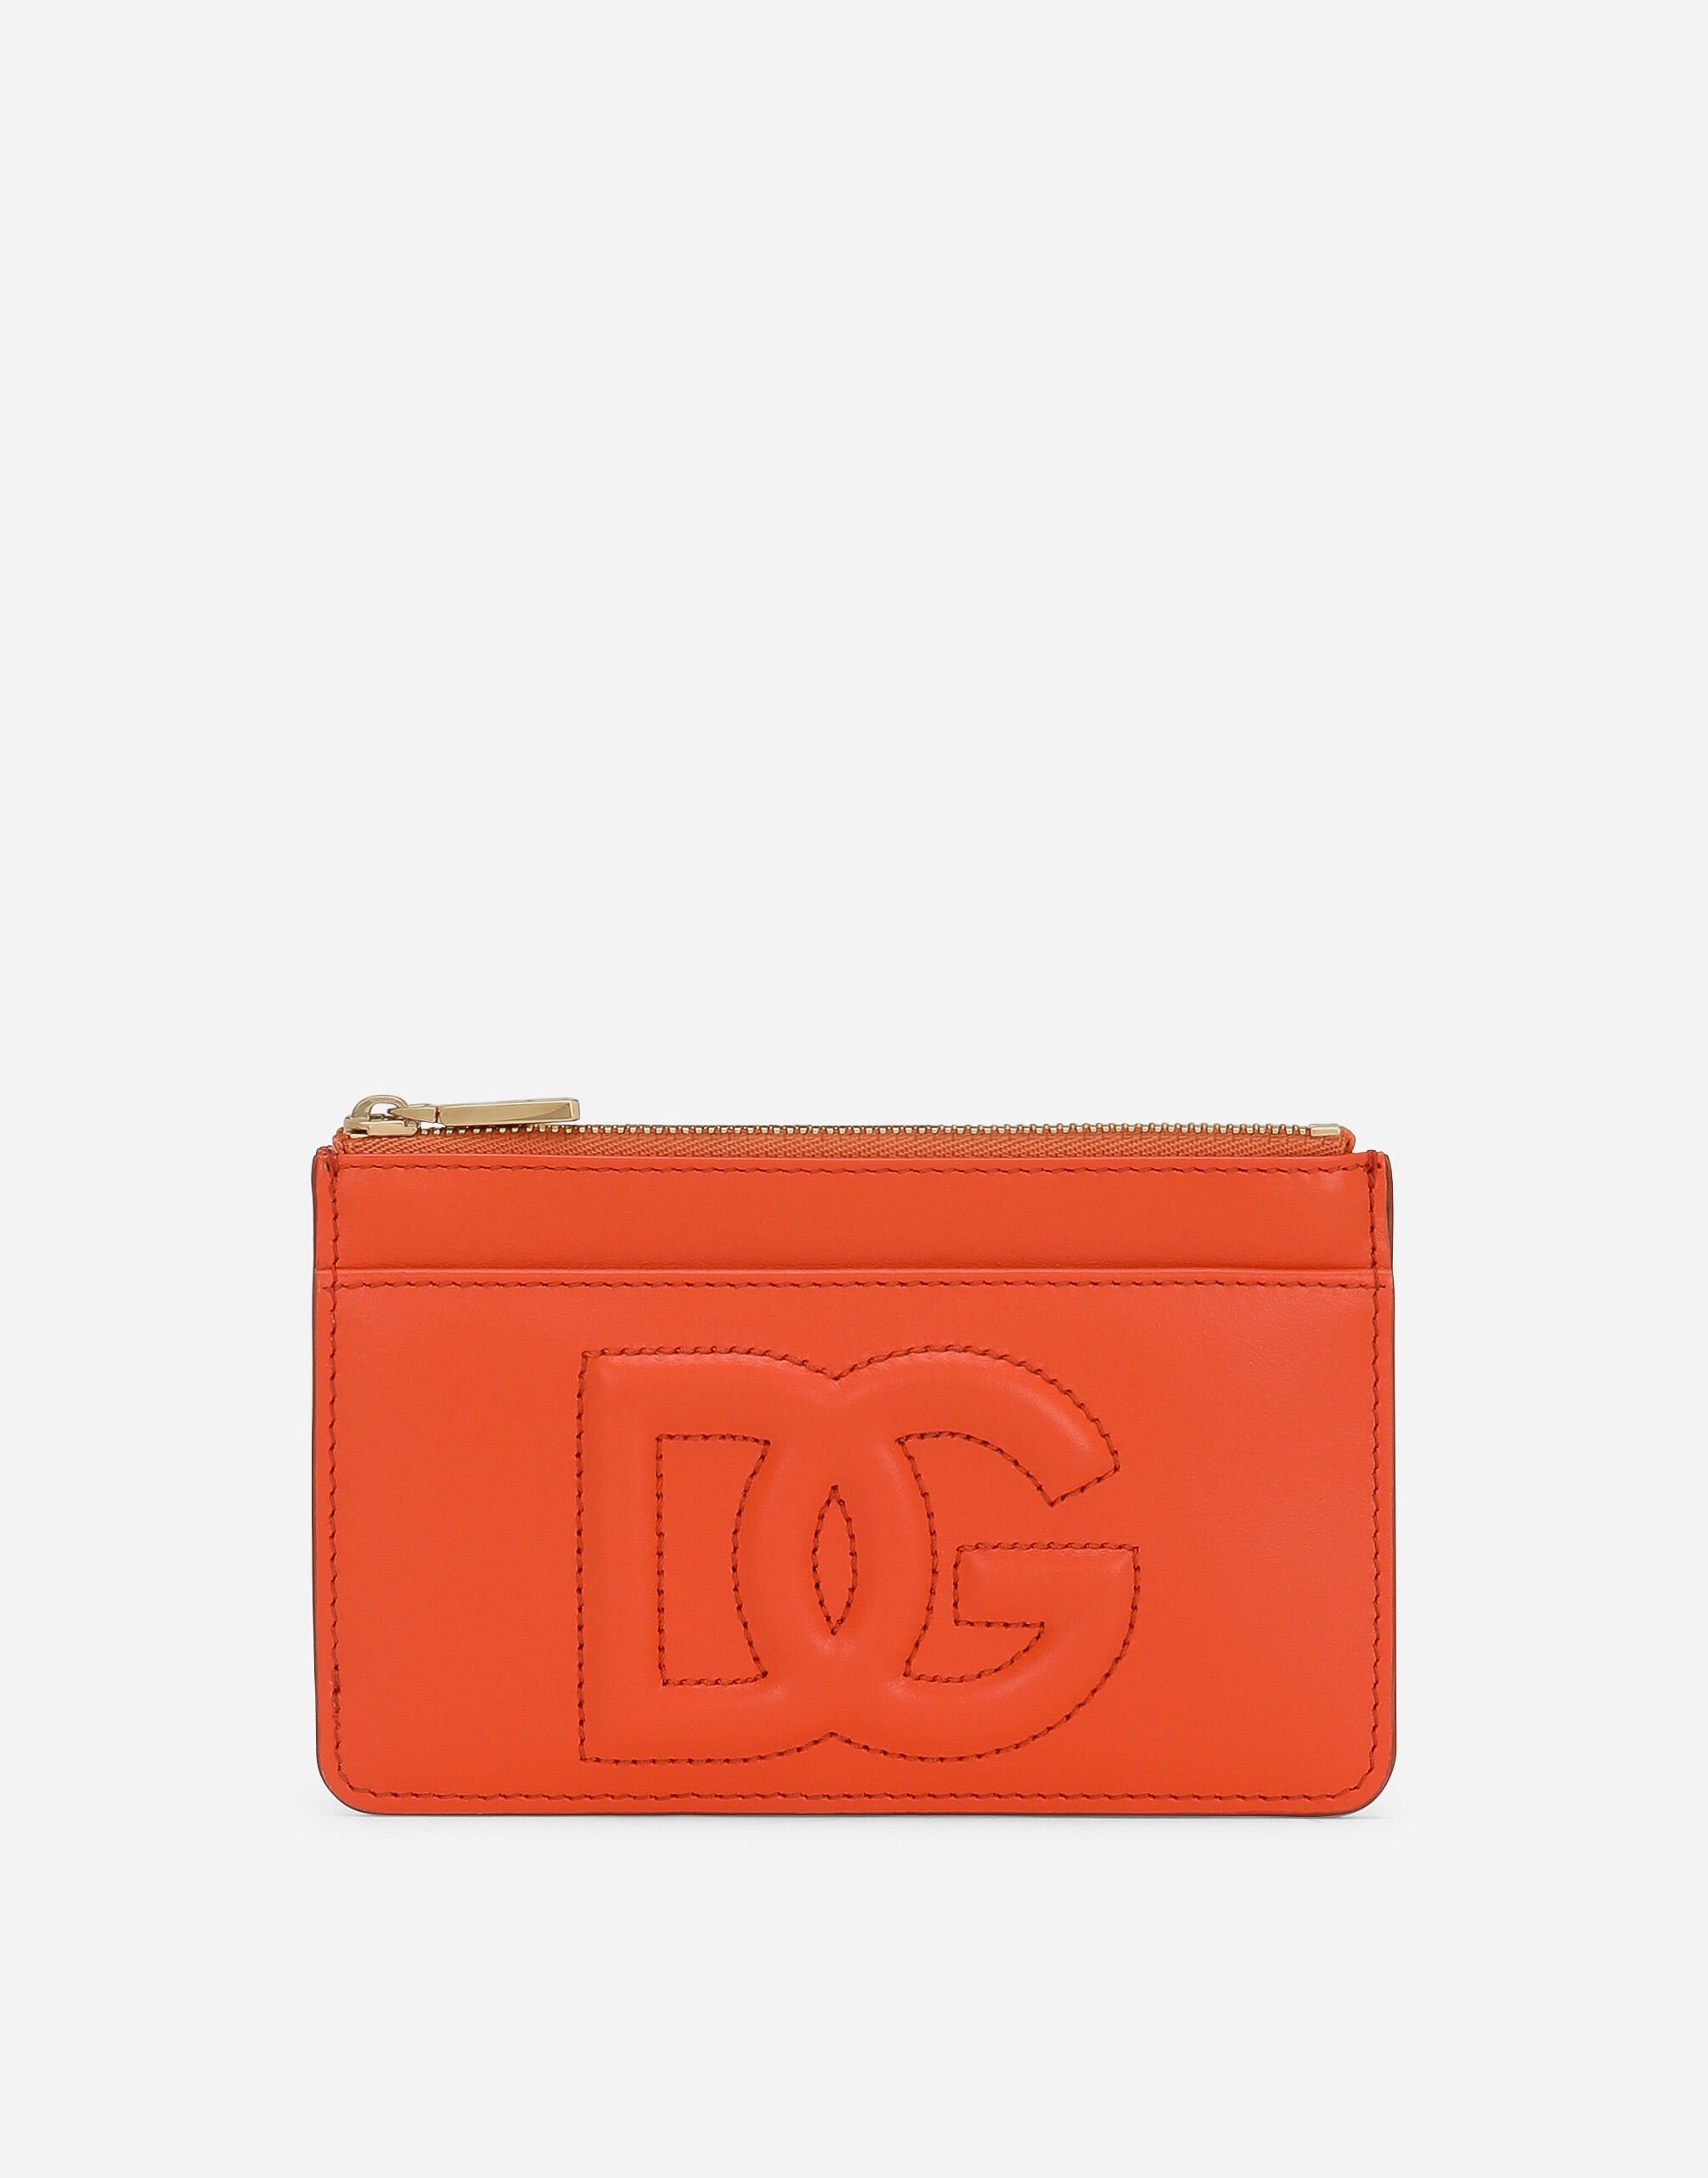 Dolce & Gabbana حافظة بطاقات DG Logo متوسطة برتقالي BI1261AS204